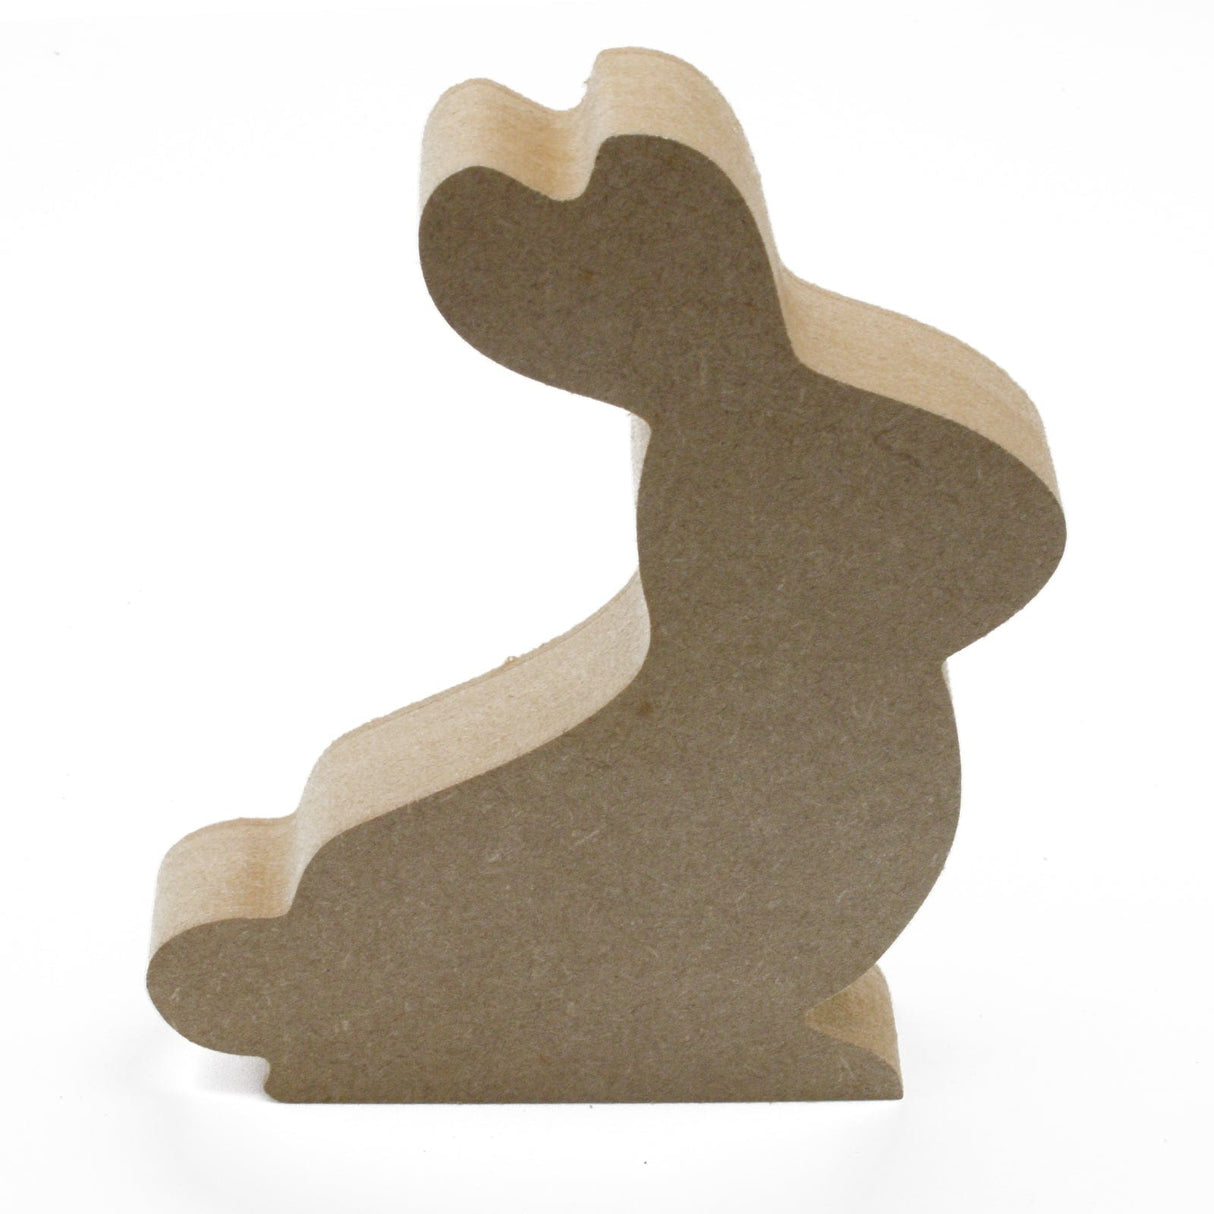 Freestanding Easter Bunny Craft Shapes - Laserworksuk